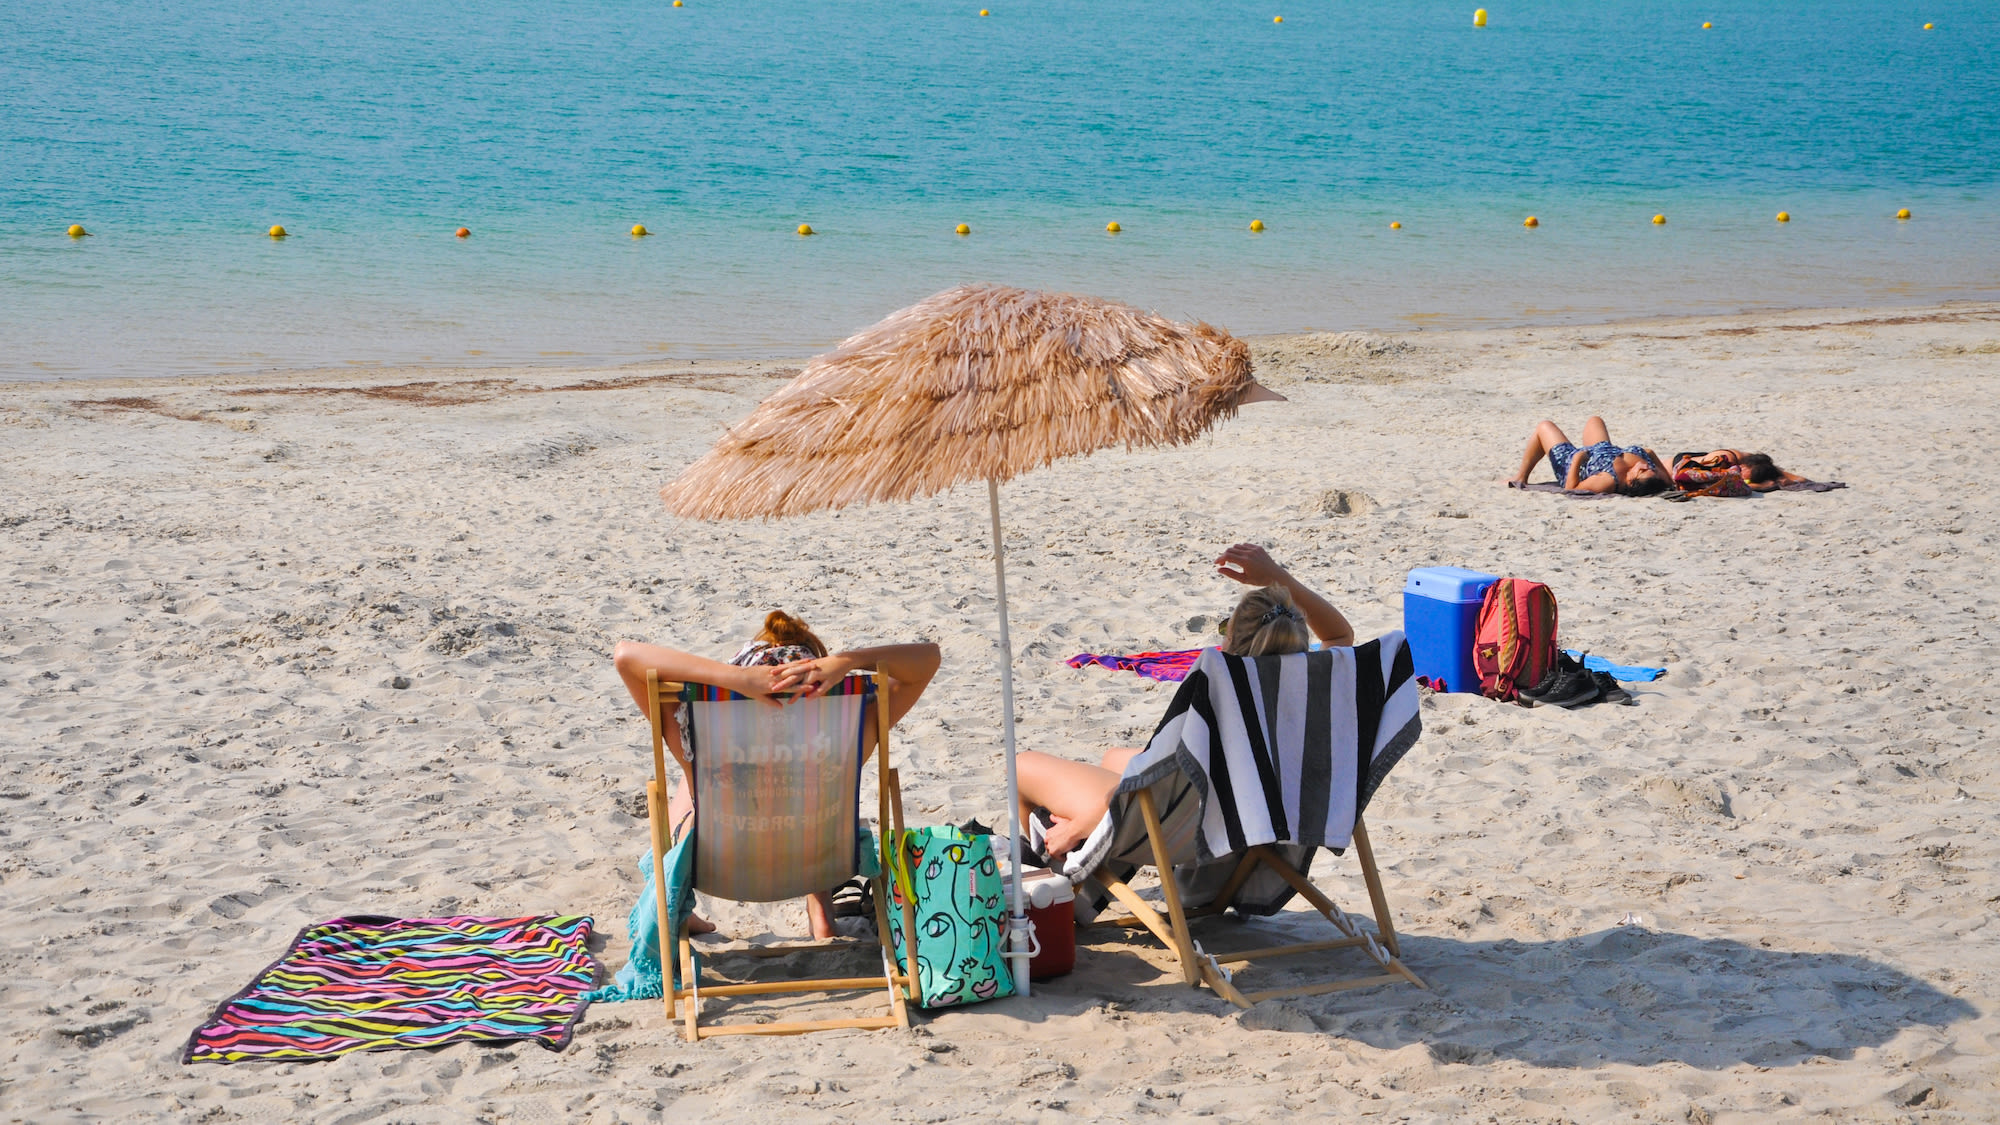 Twee vrouwen op strand in strandstoel met tropische parasol